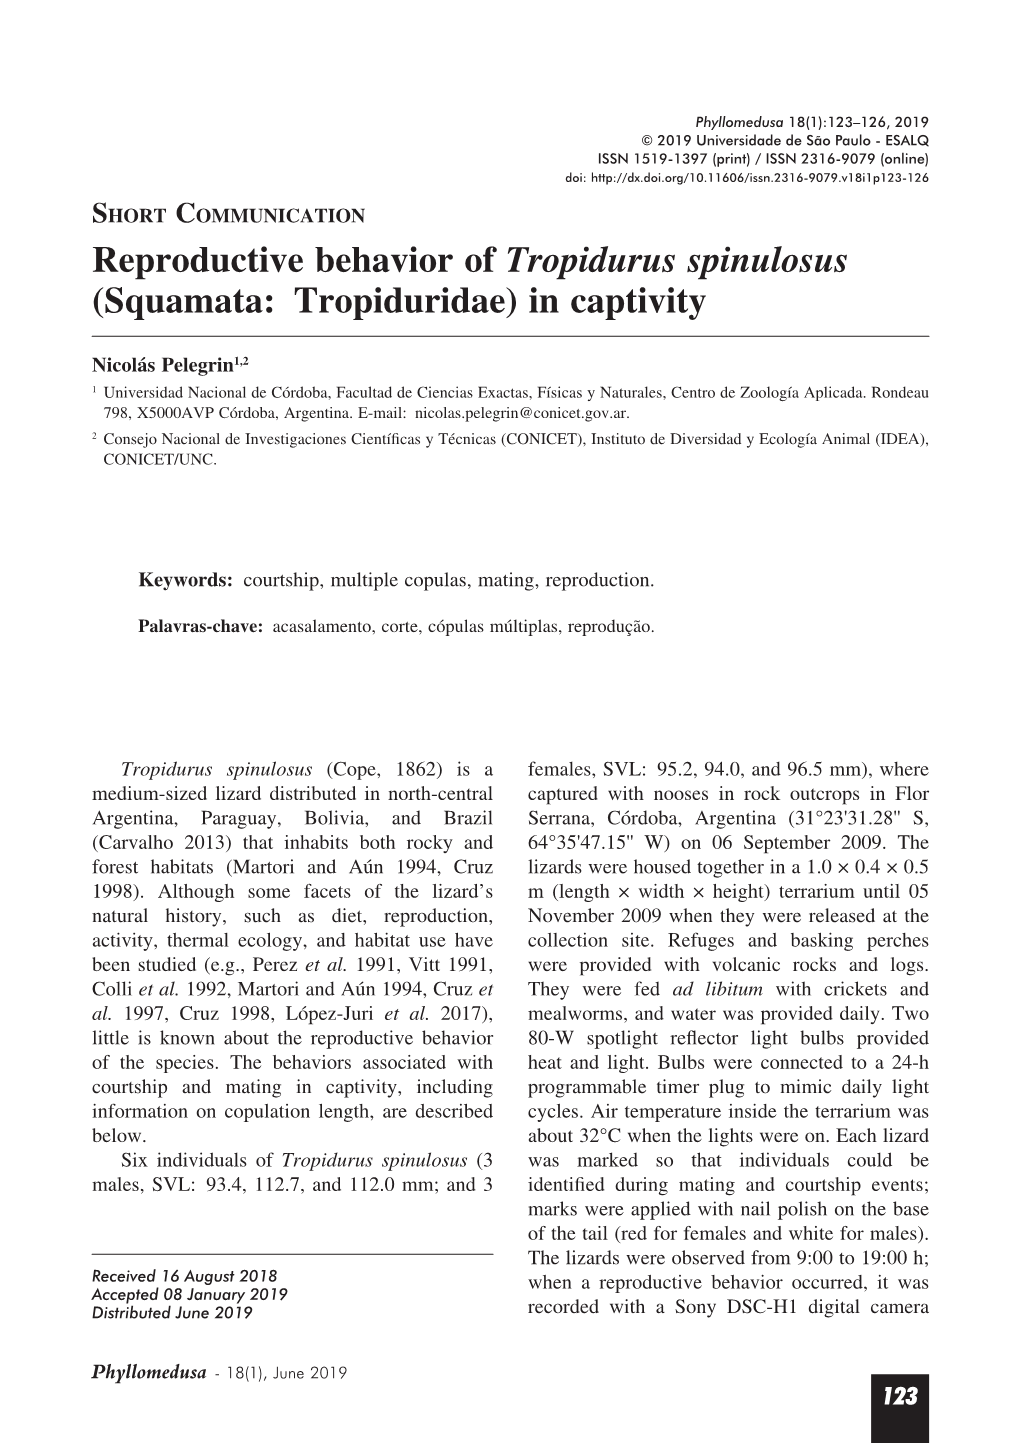 Reproductive Behavior of Tropidurus Spinulosus (Squamata: Tropiduridae) in Captivity